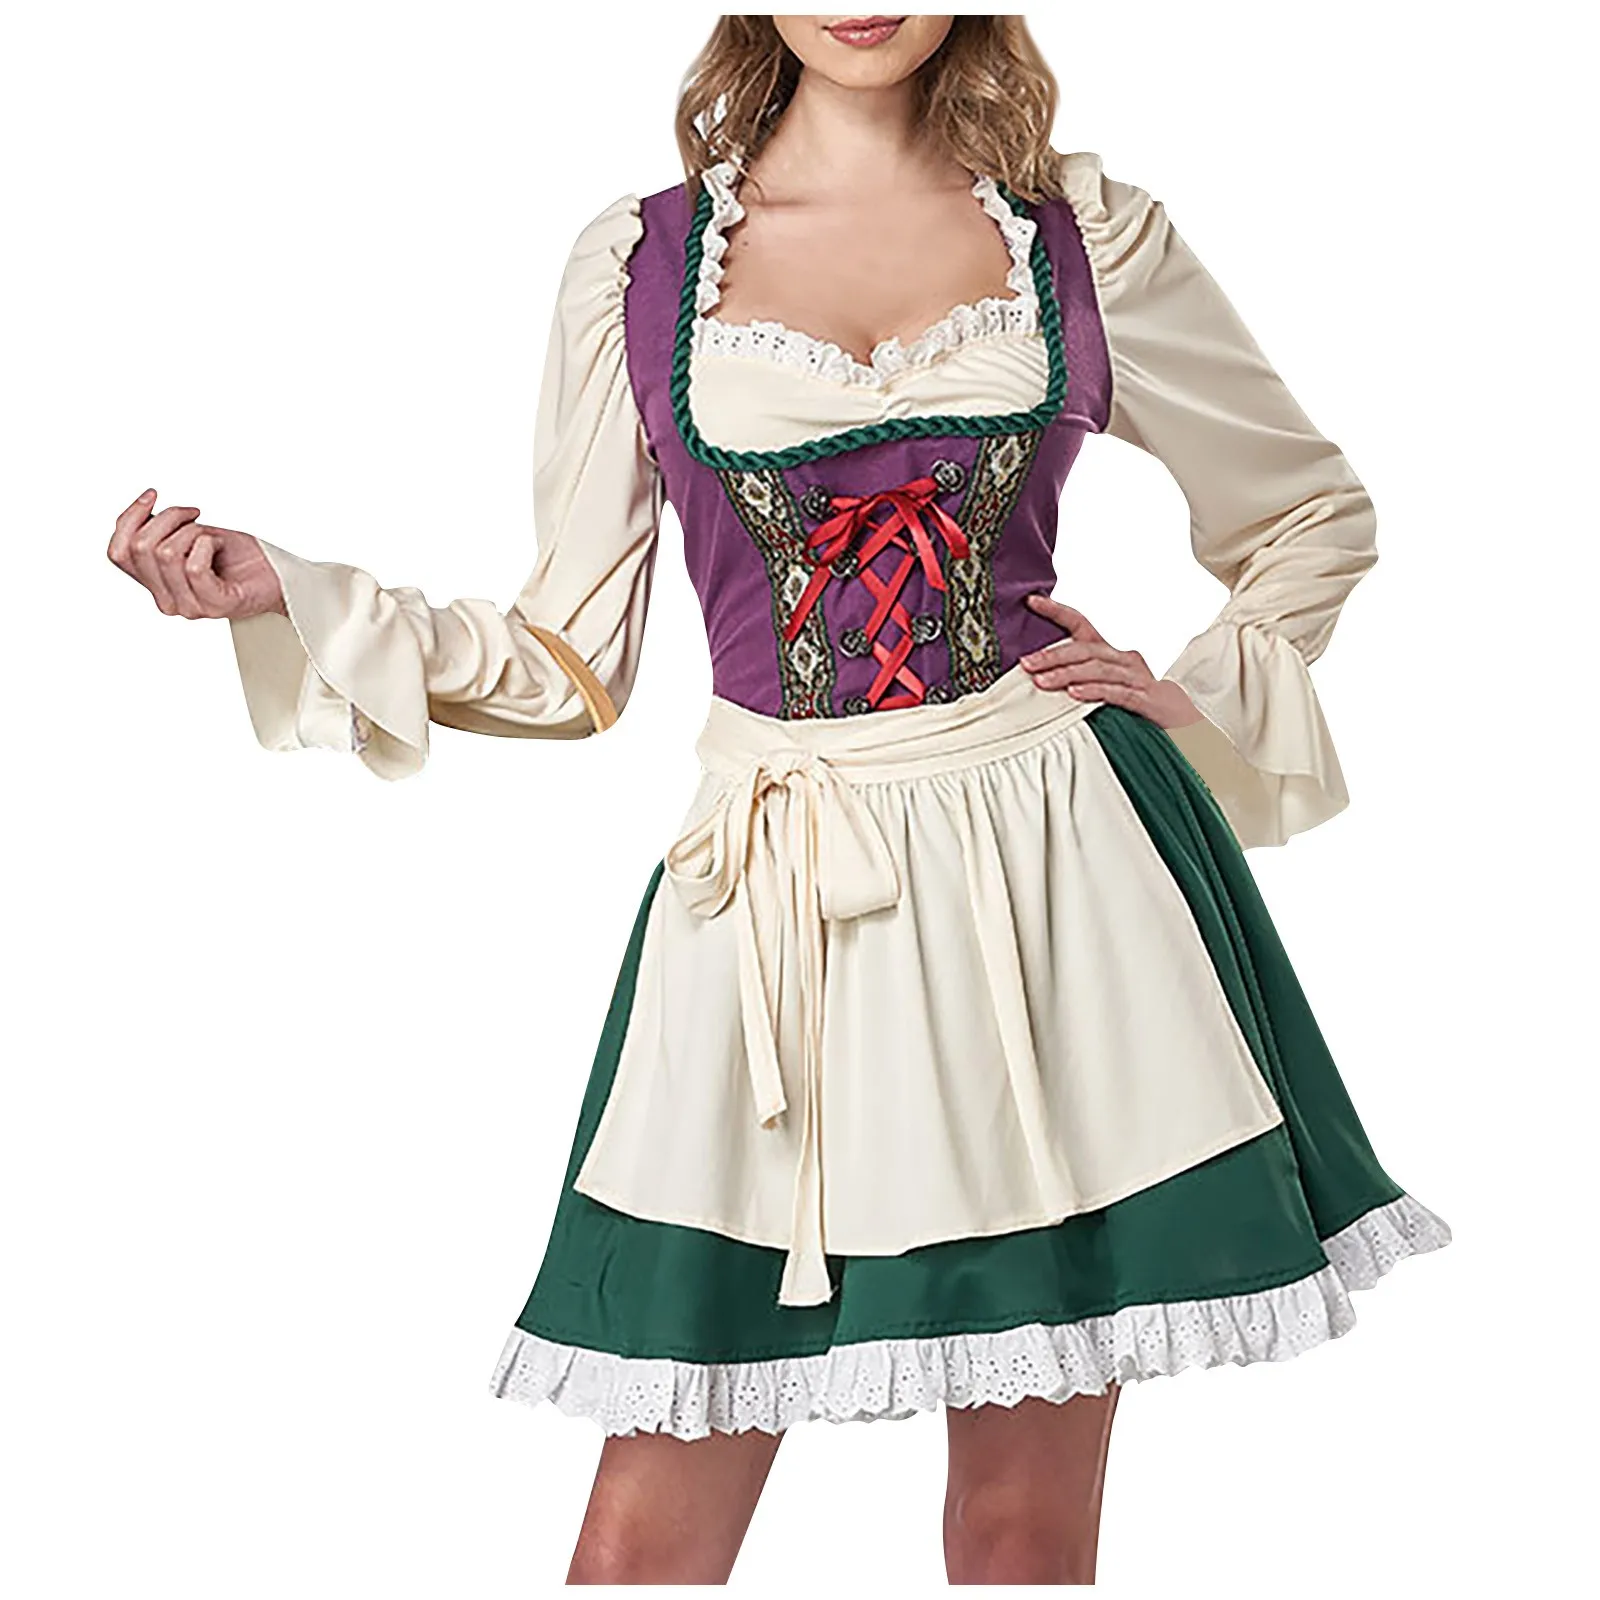 

Женский традиционный немецкий костюм Баварской пивной девушки, сексуальный костюм на Октоберфест, фестиваль, дирндл, косплей-костюм, женское платье